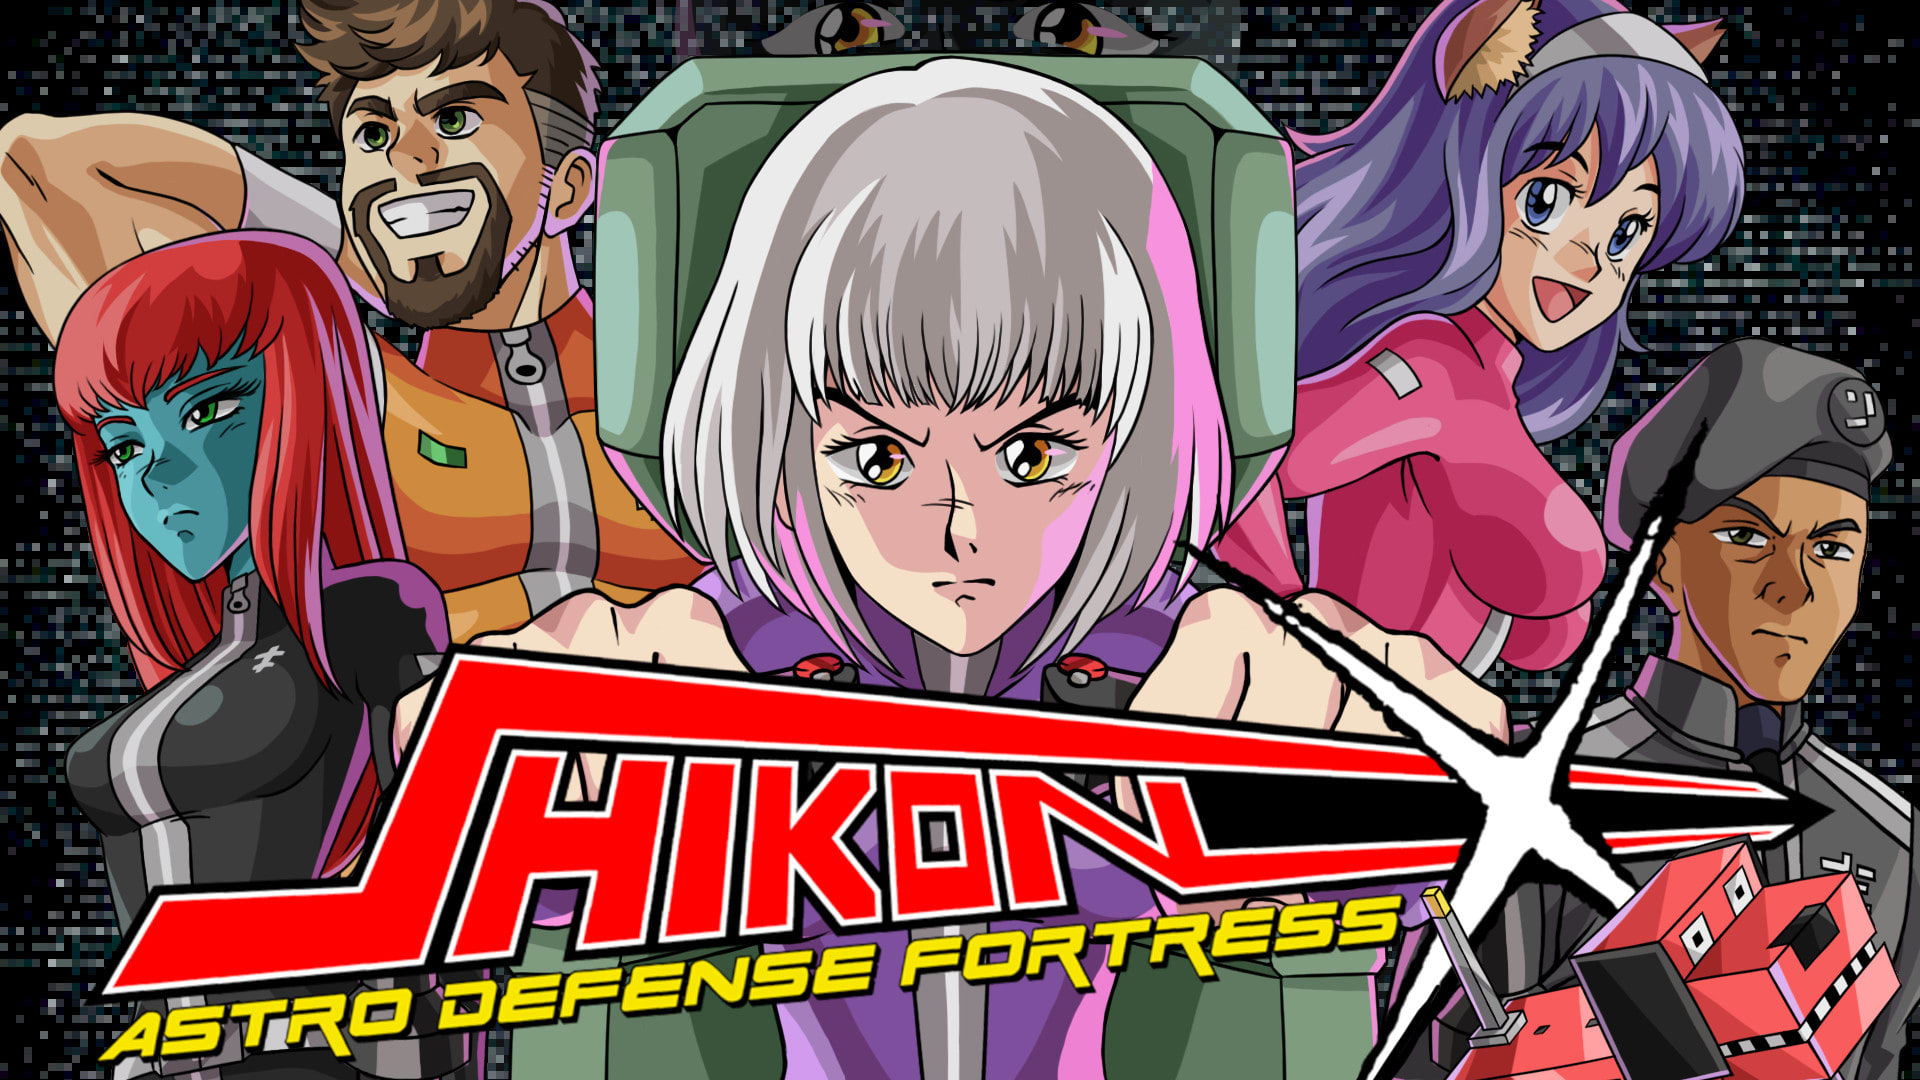 Shikon-X Astro Defense Fortress 1